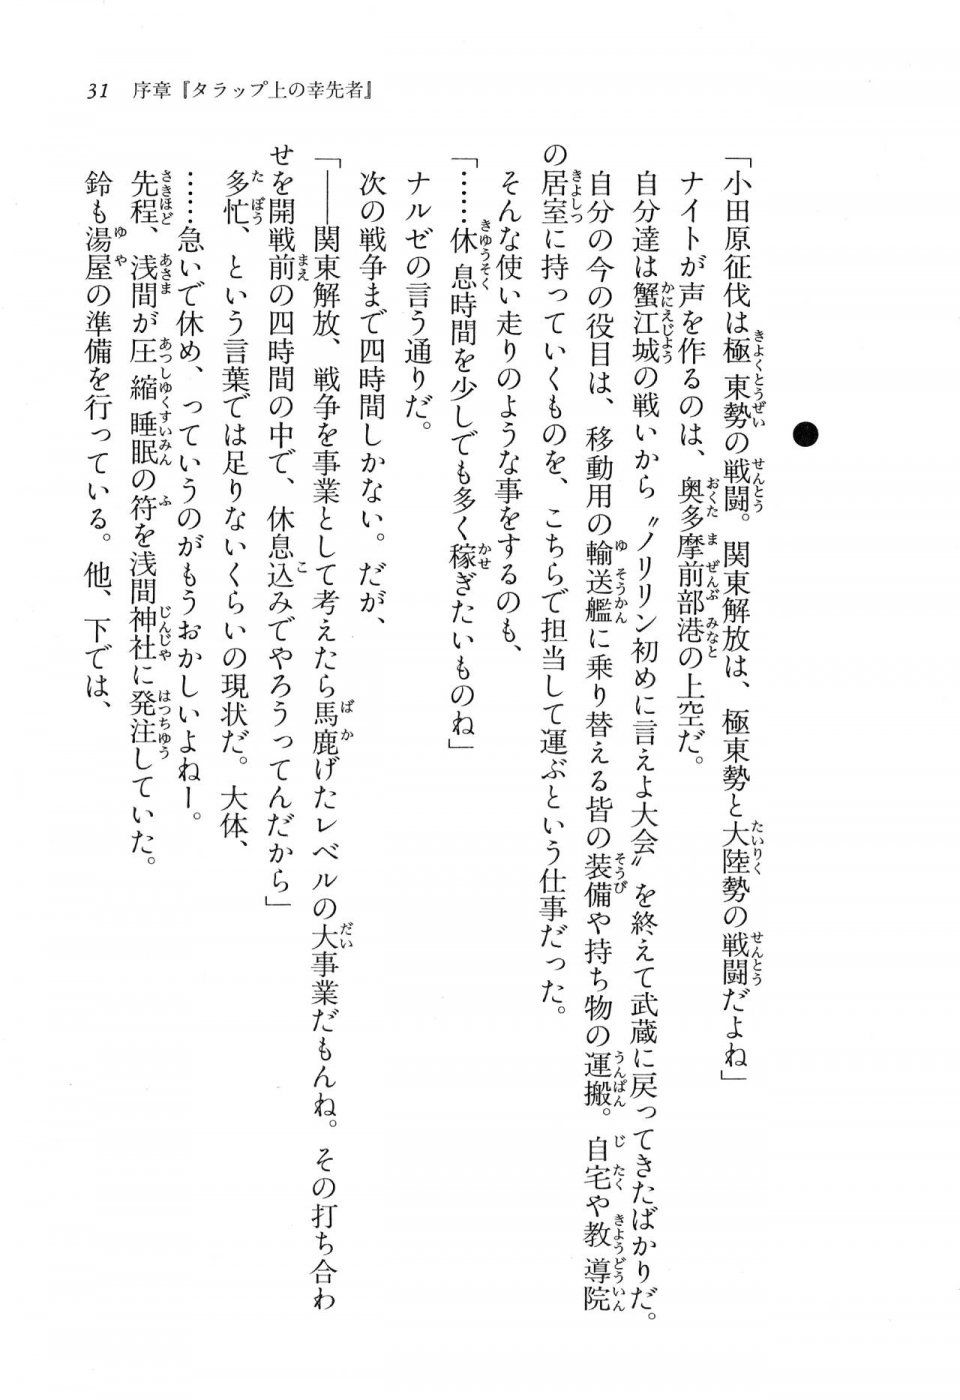 Kyoukai Senjou no Horizon LN Vol 16(7A) - Photo #31